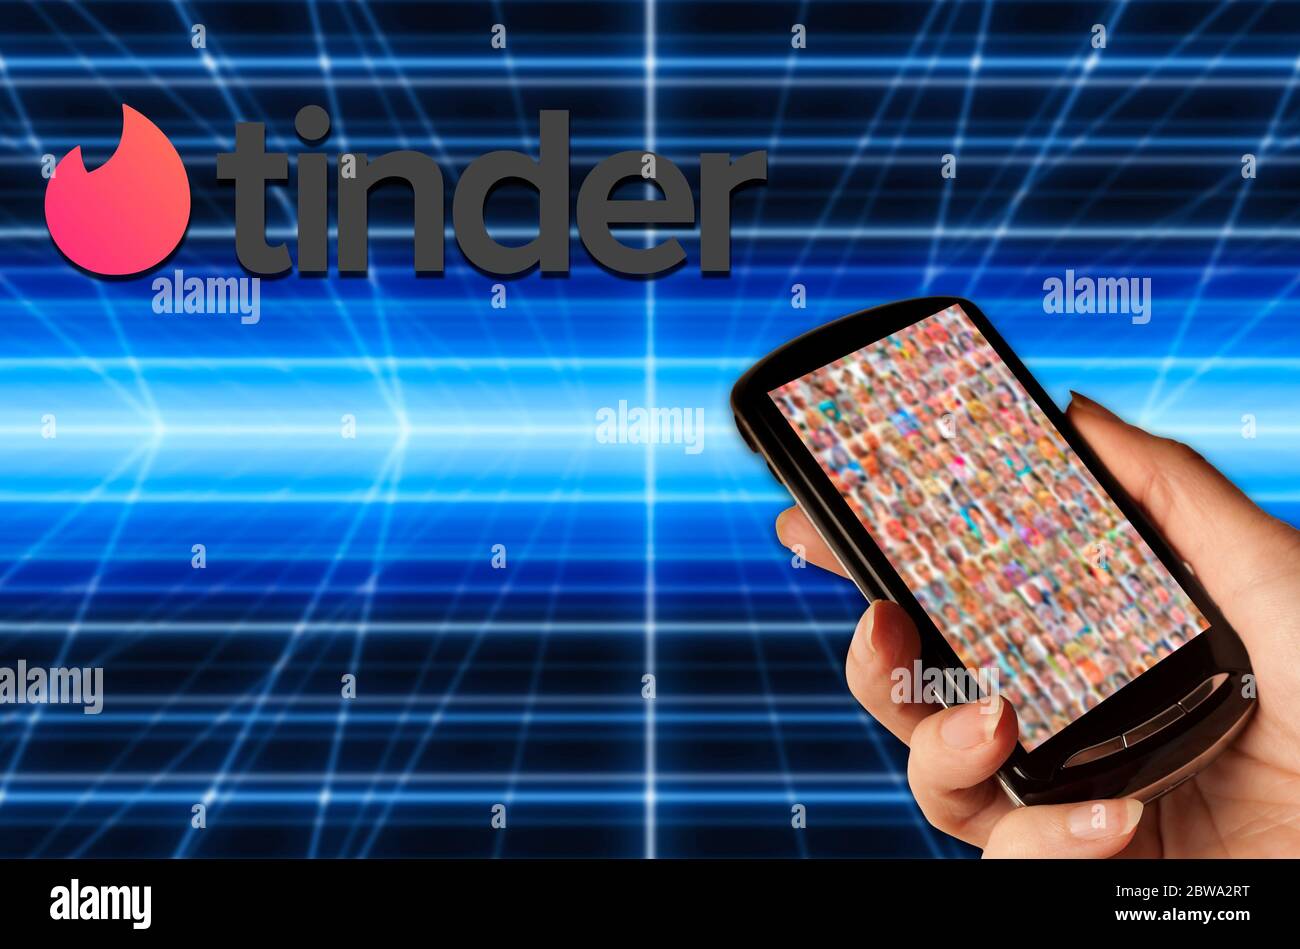 O Aplicativo Móvel Tinder é Aberto Na Loja De Jogos Em Um Telefone Celular.  Foto de Stock Editorial - Imagem de celular, jogo: 214104603